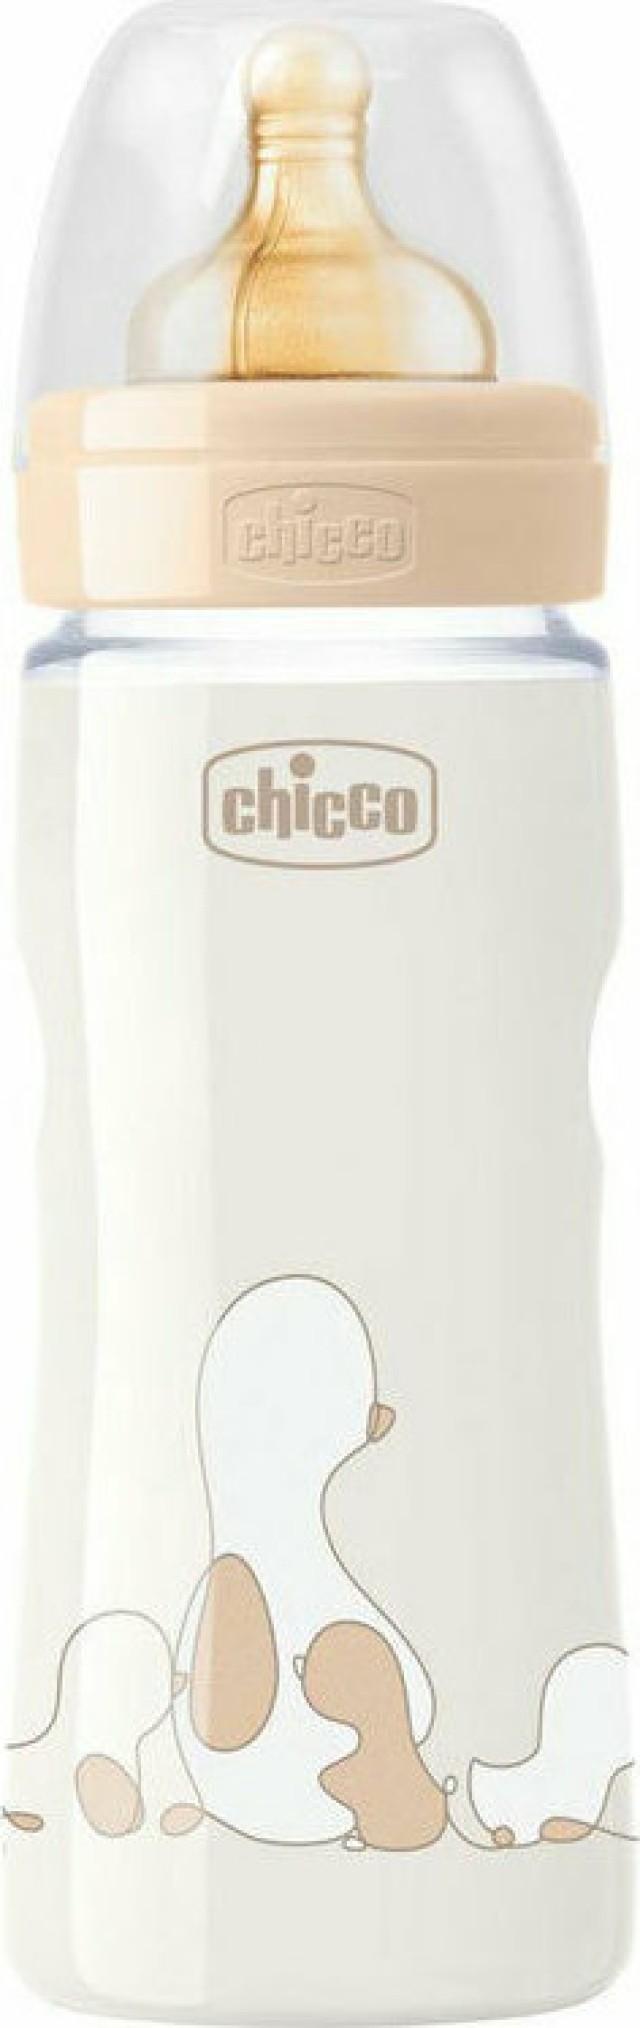 CHICCO Μπιμπερό Πλαστικό Original Touch Με Θηλή Καουτσούκ 4+ Κατά Των Κολικών Unisex (027634 300), 330ml